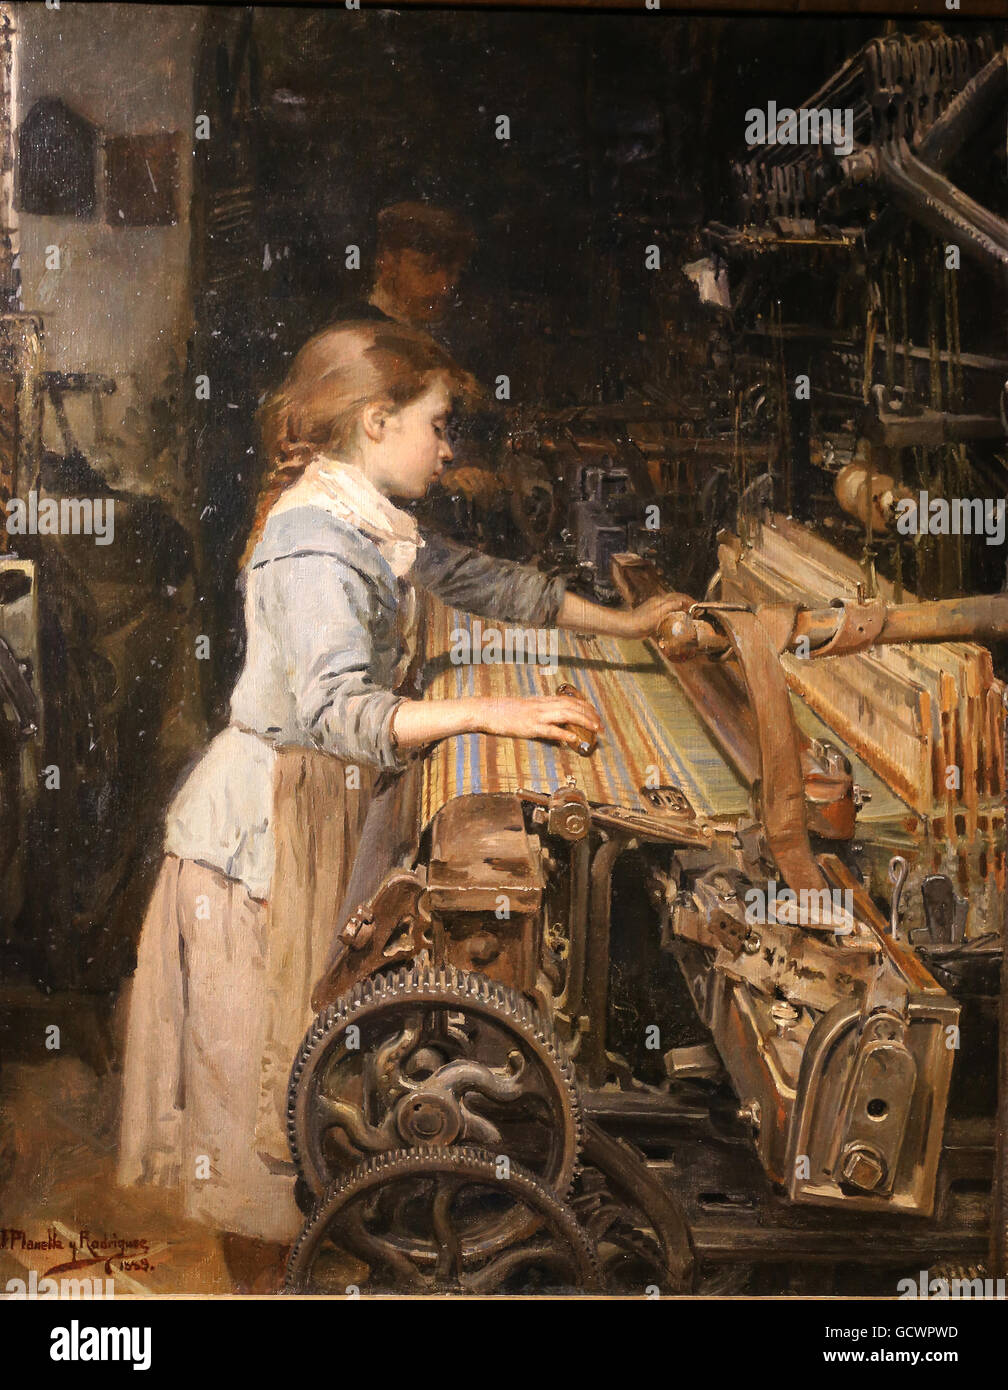 Le groupe de fille par Joan Planella, 1885. Musée d'Histoire de Catalogne, Barcelone. L'Espagne. Banque D'Images